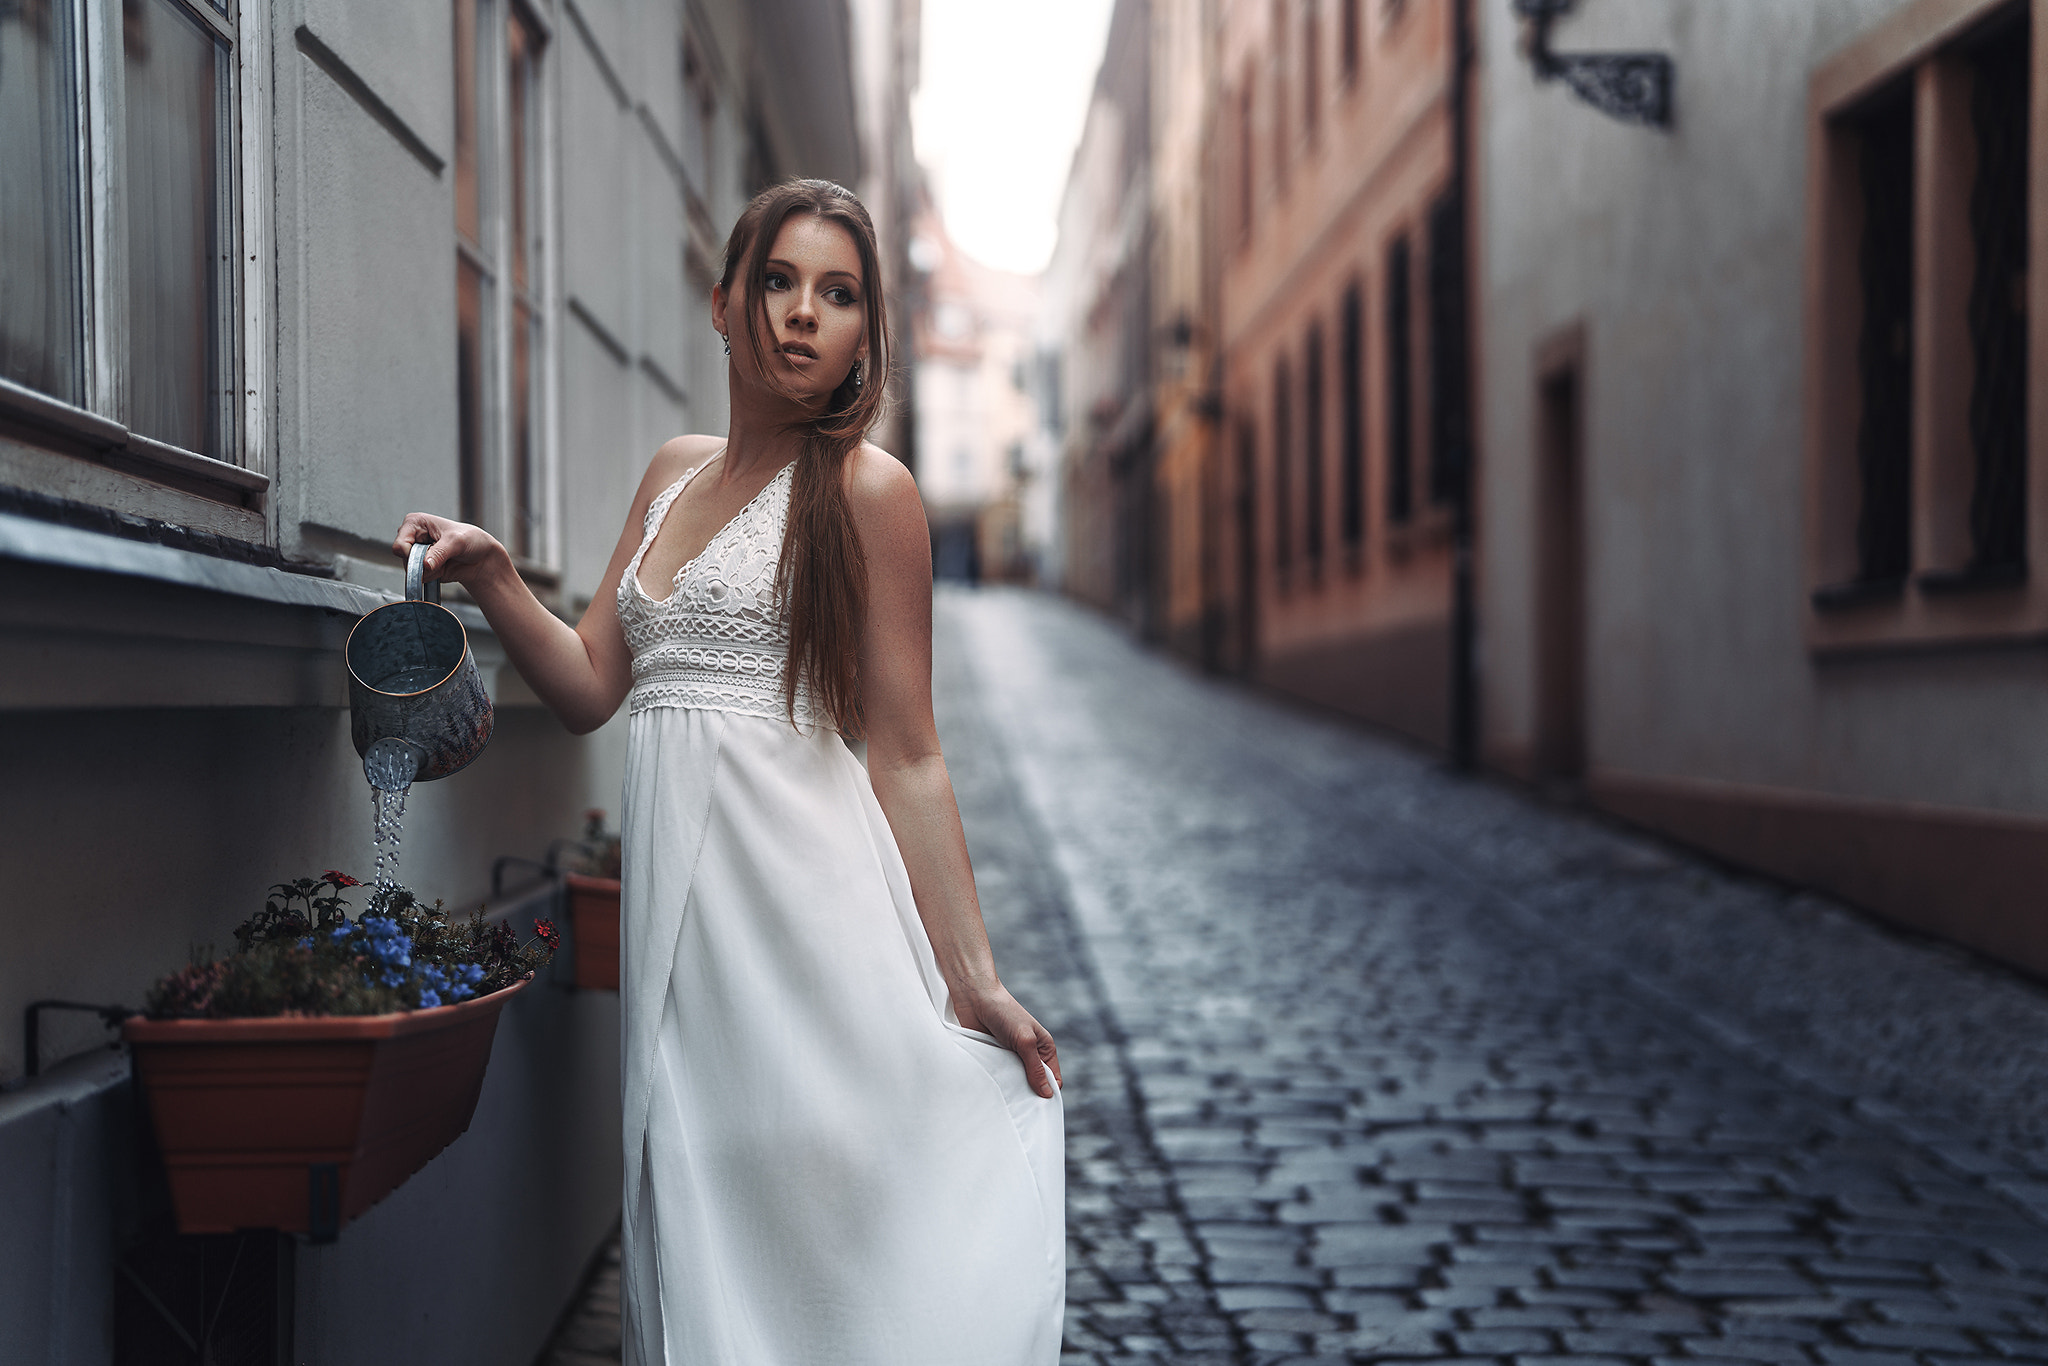 Viktoria Stephanie Stefan Hausler White Dress Flowers Watering Viktoria Kummer 2048x1366